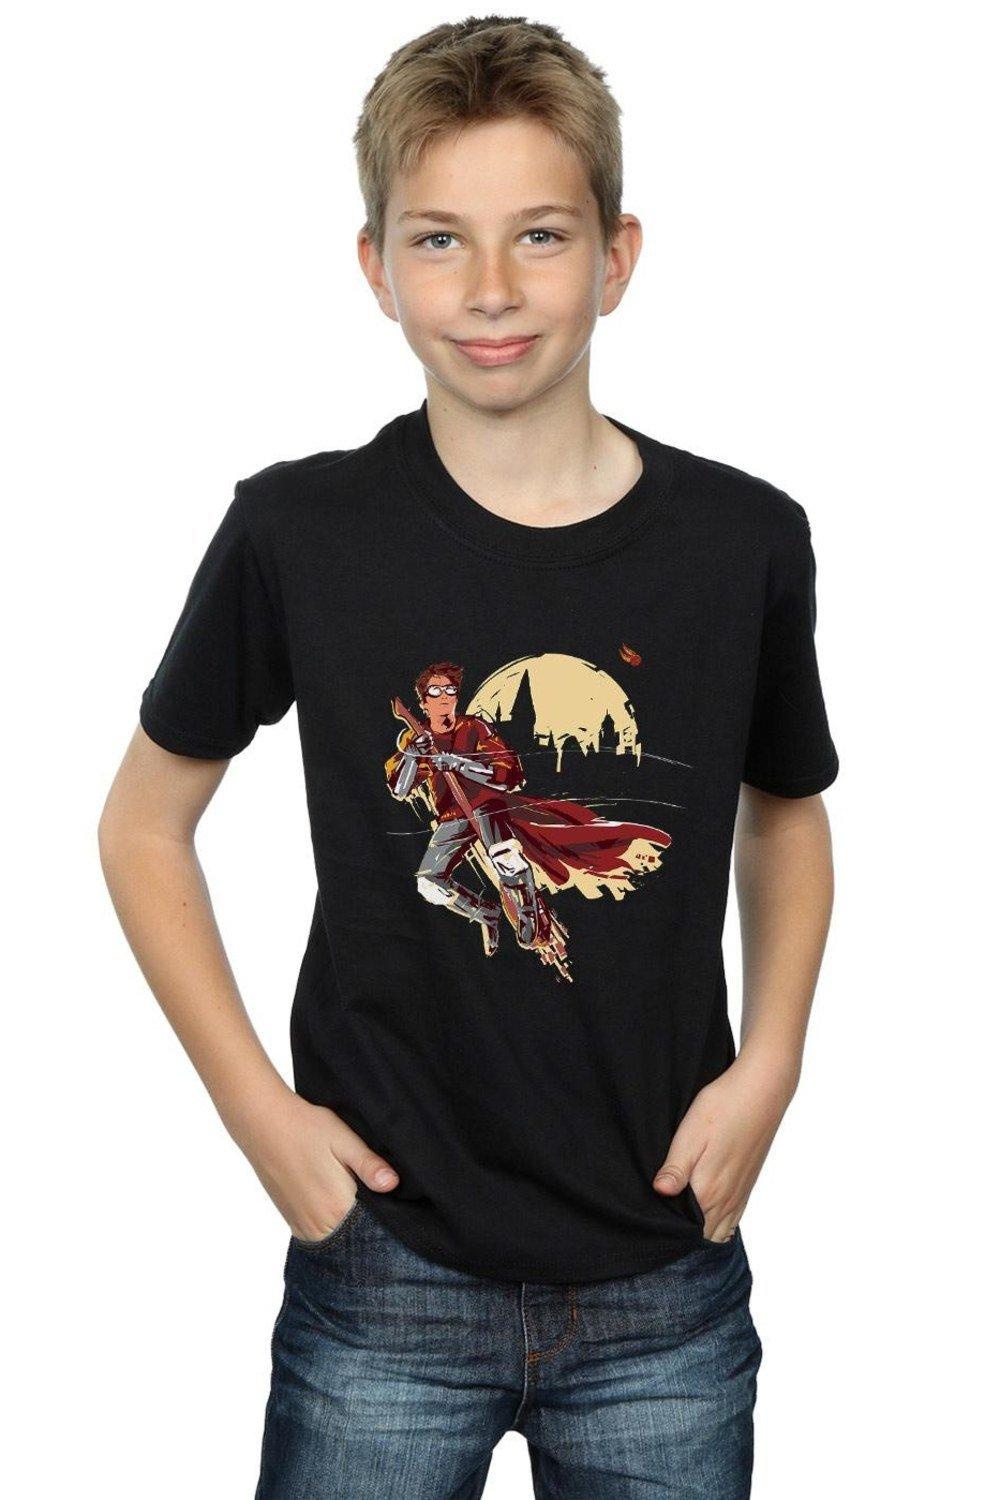 Quidditch Seeeker T-Shirt